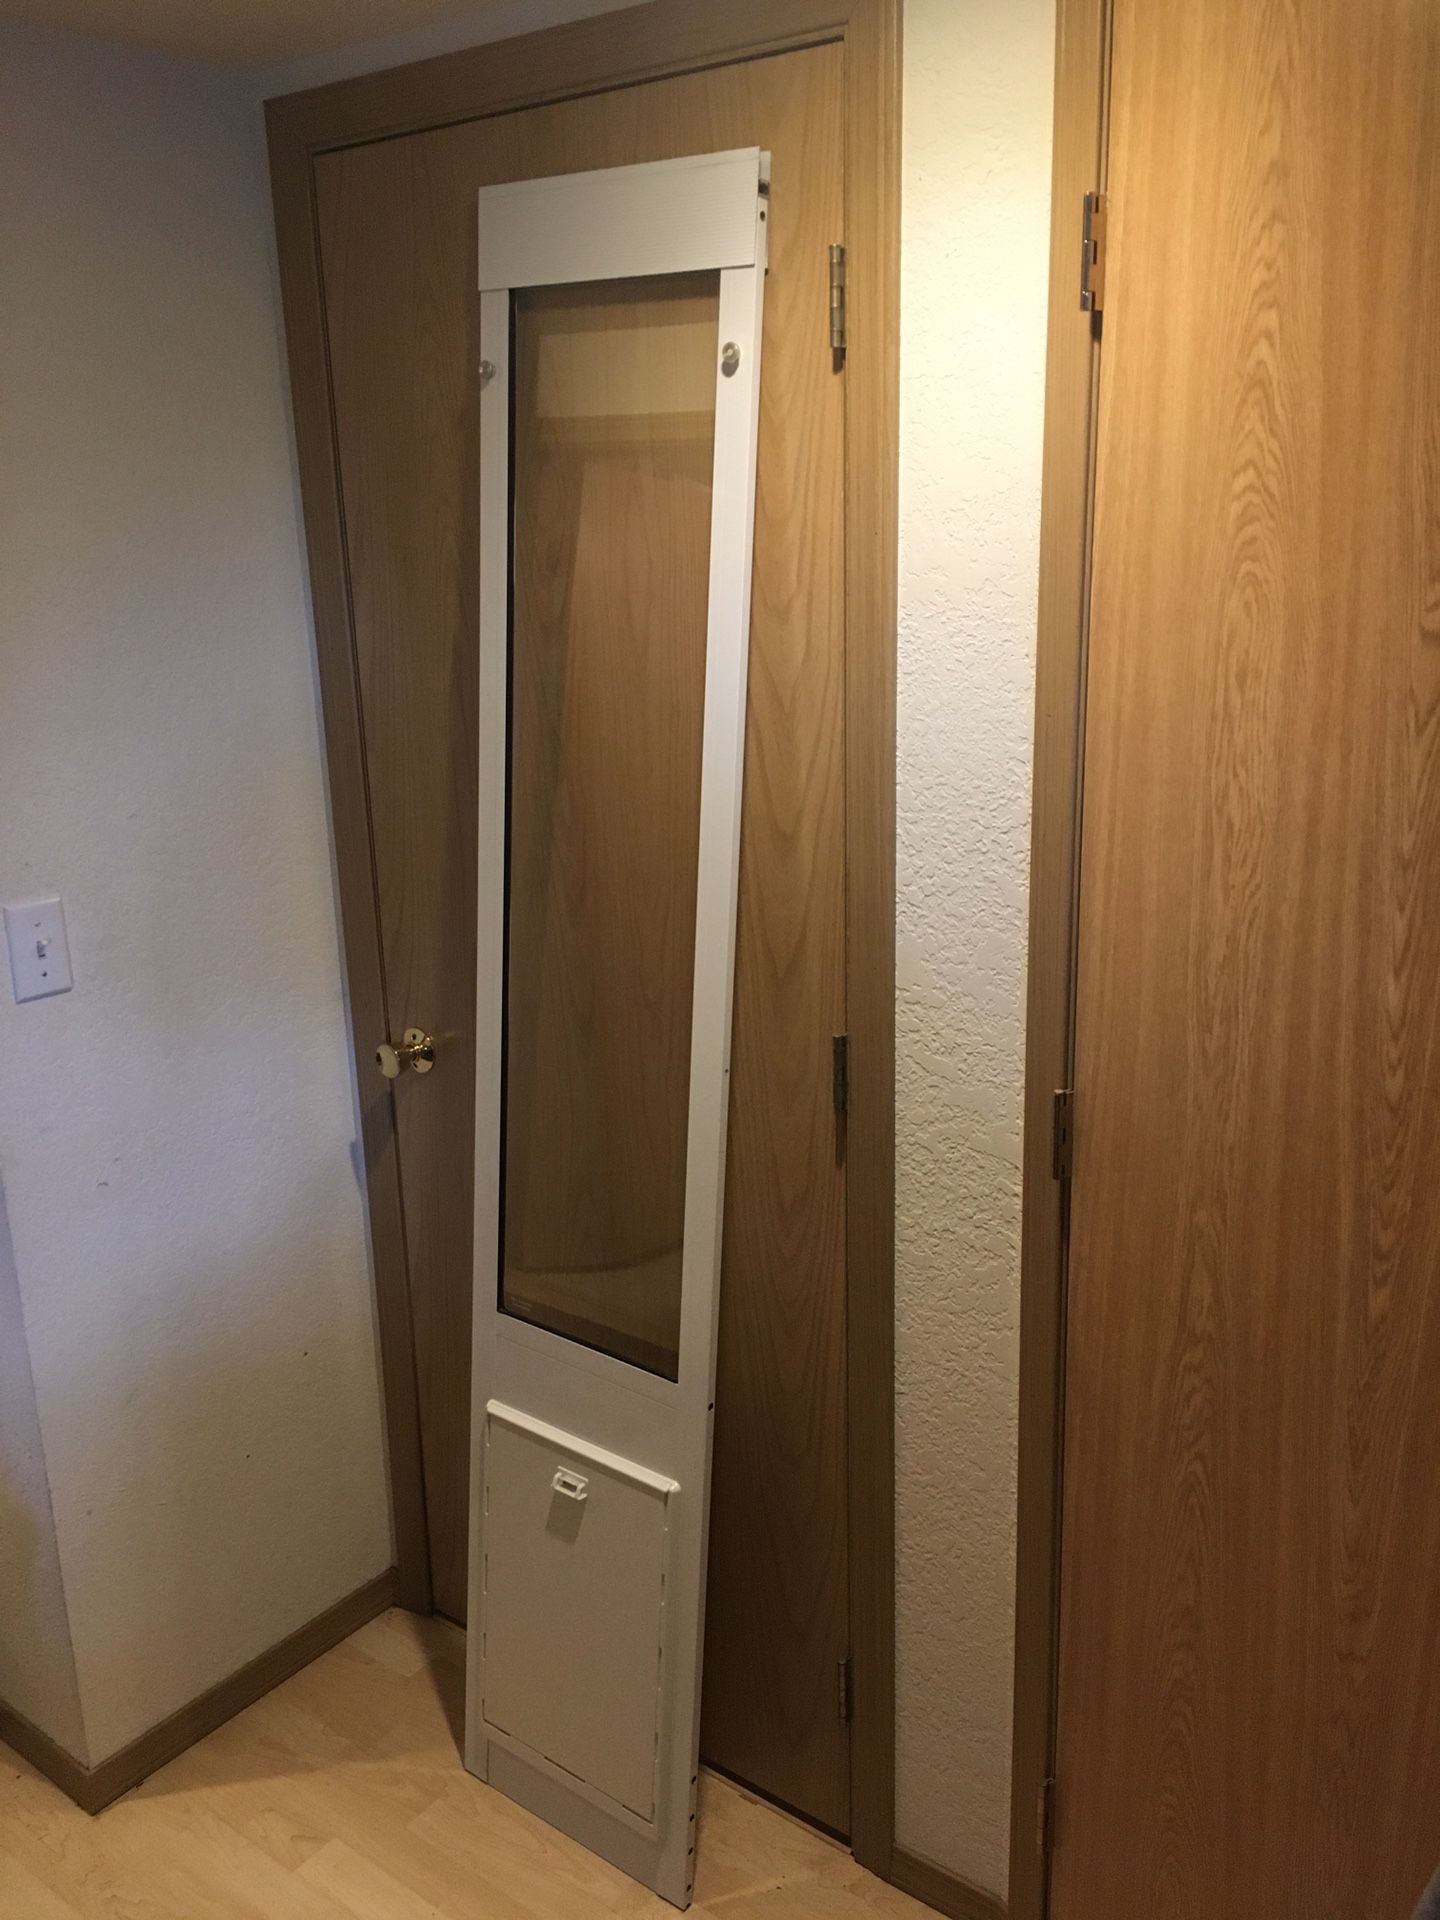 Large XL Pet Door For Sliding Glass Doors (Doggie Door)